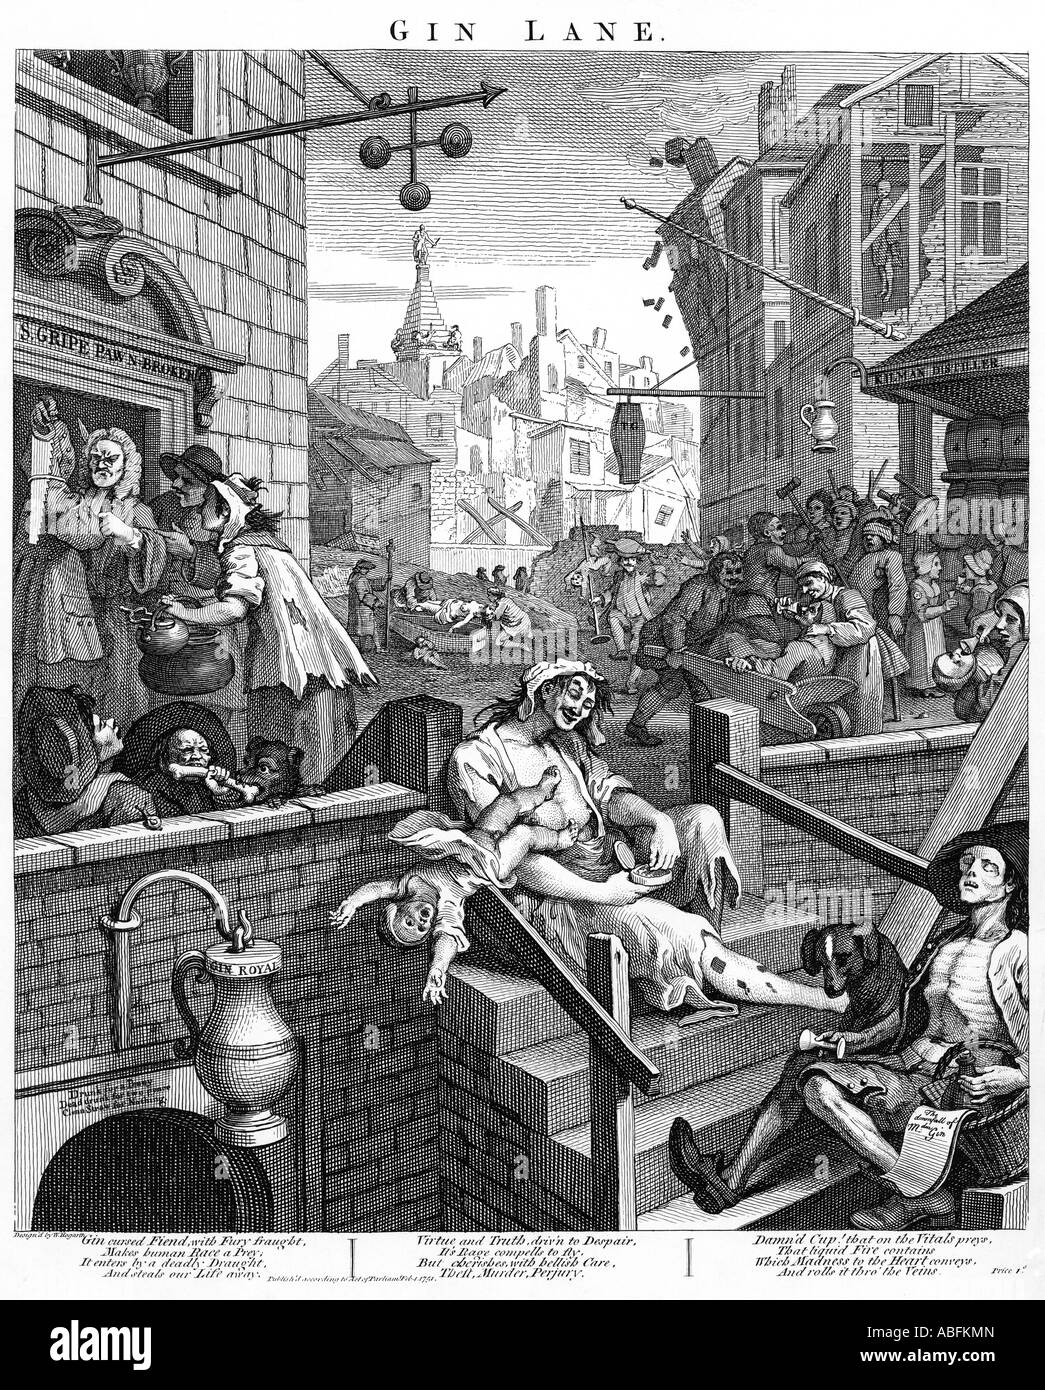 Gin Lane William Hogarth 3e état de la gravure de 1751 montrant l'inique effets de l'engouement de Londres au 18e siècle pour le gin Banque D'Images